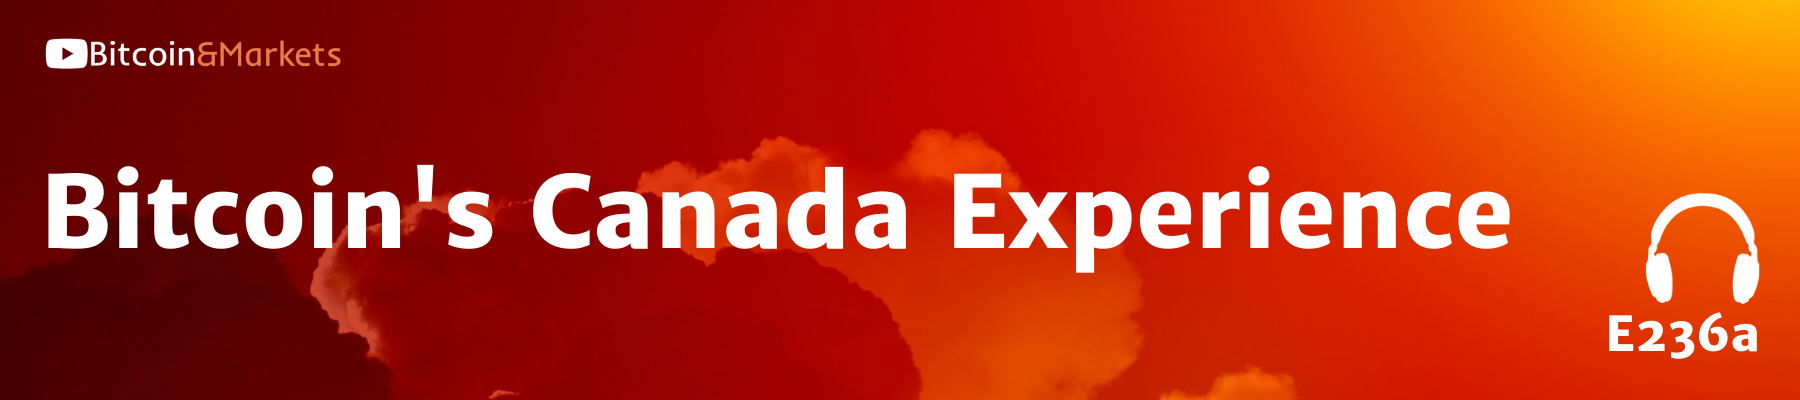 Bitcoin's Canada Experience - E236a